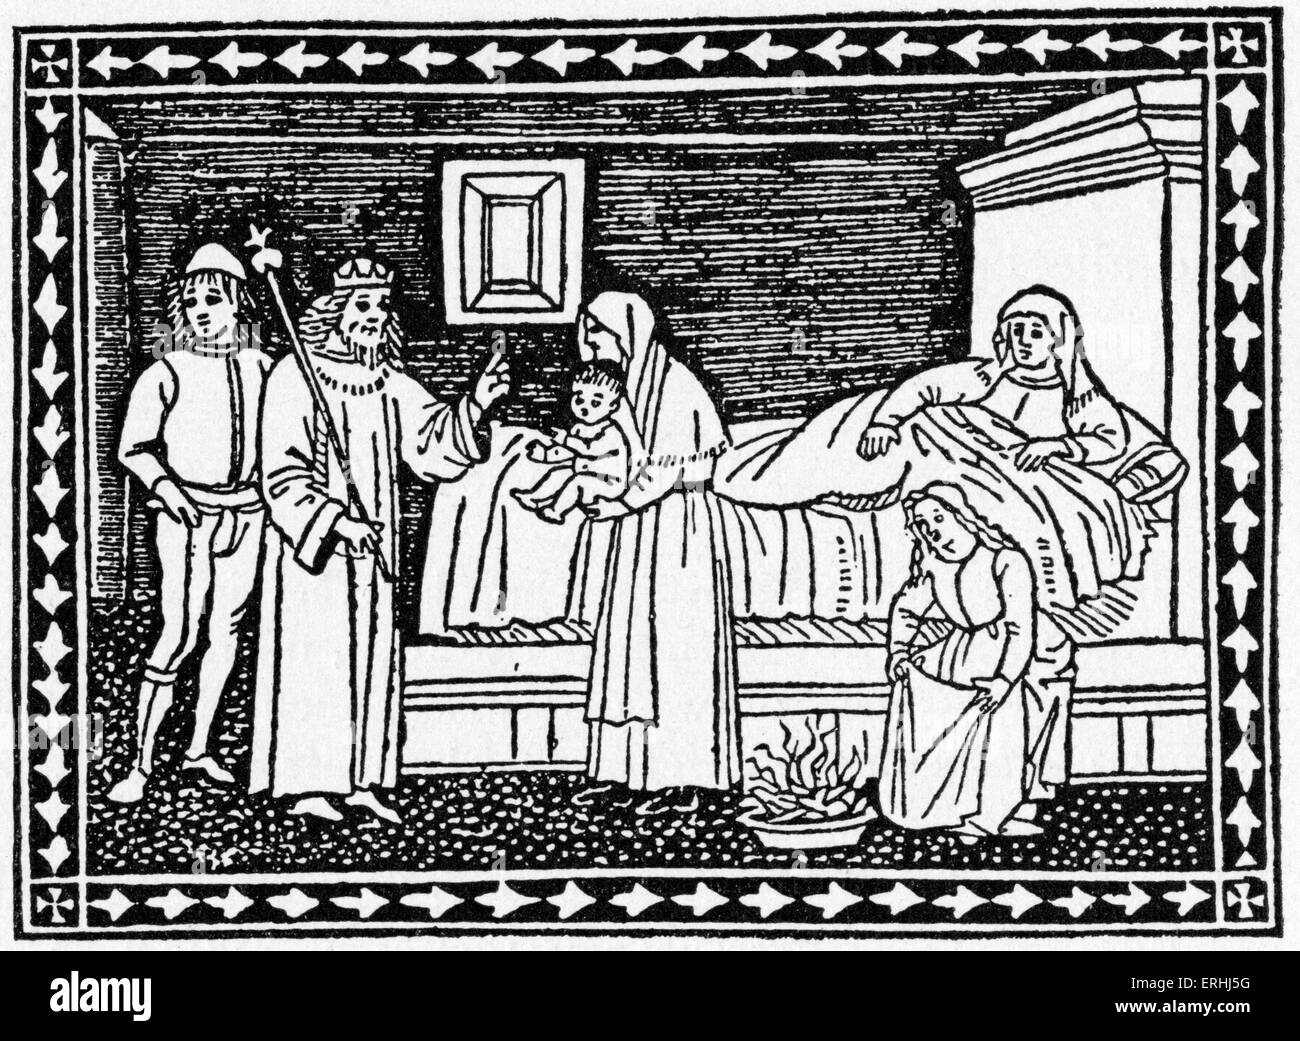 Giovanni Boccaccio' s racconto di Griselda provenienti dalla collezione del Decameron. Xilografia da una edizione fiorentina del Decameron, Foto Stock